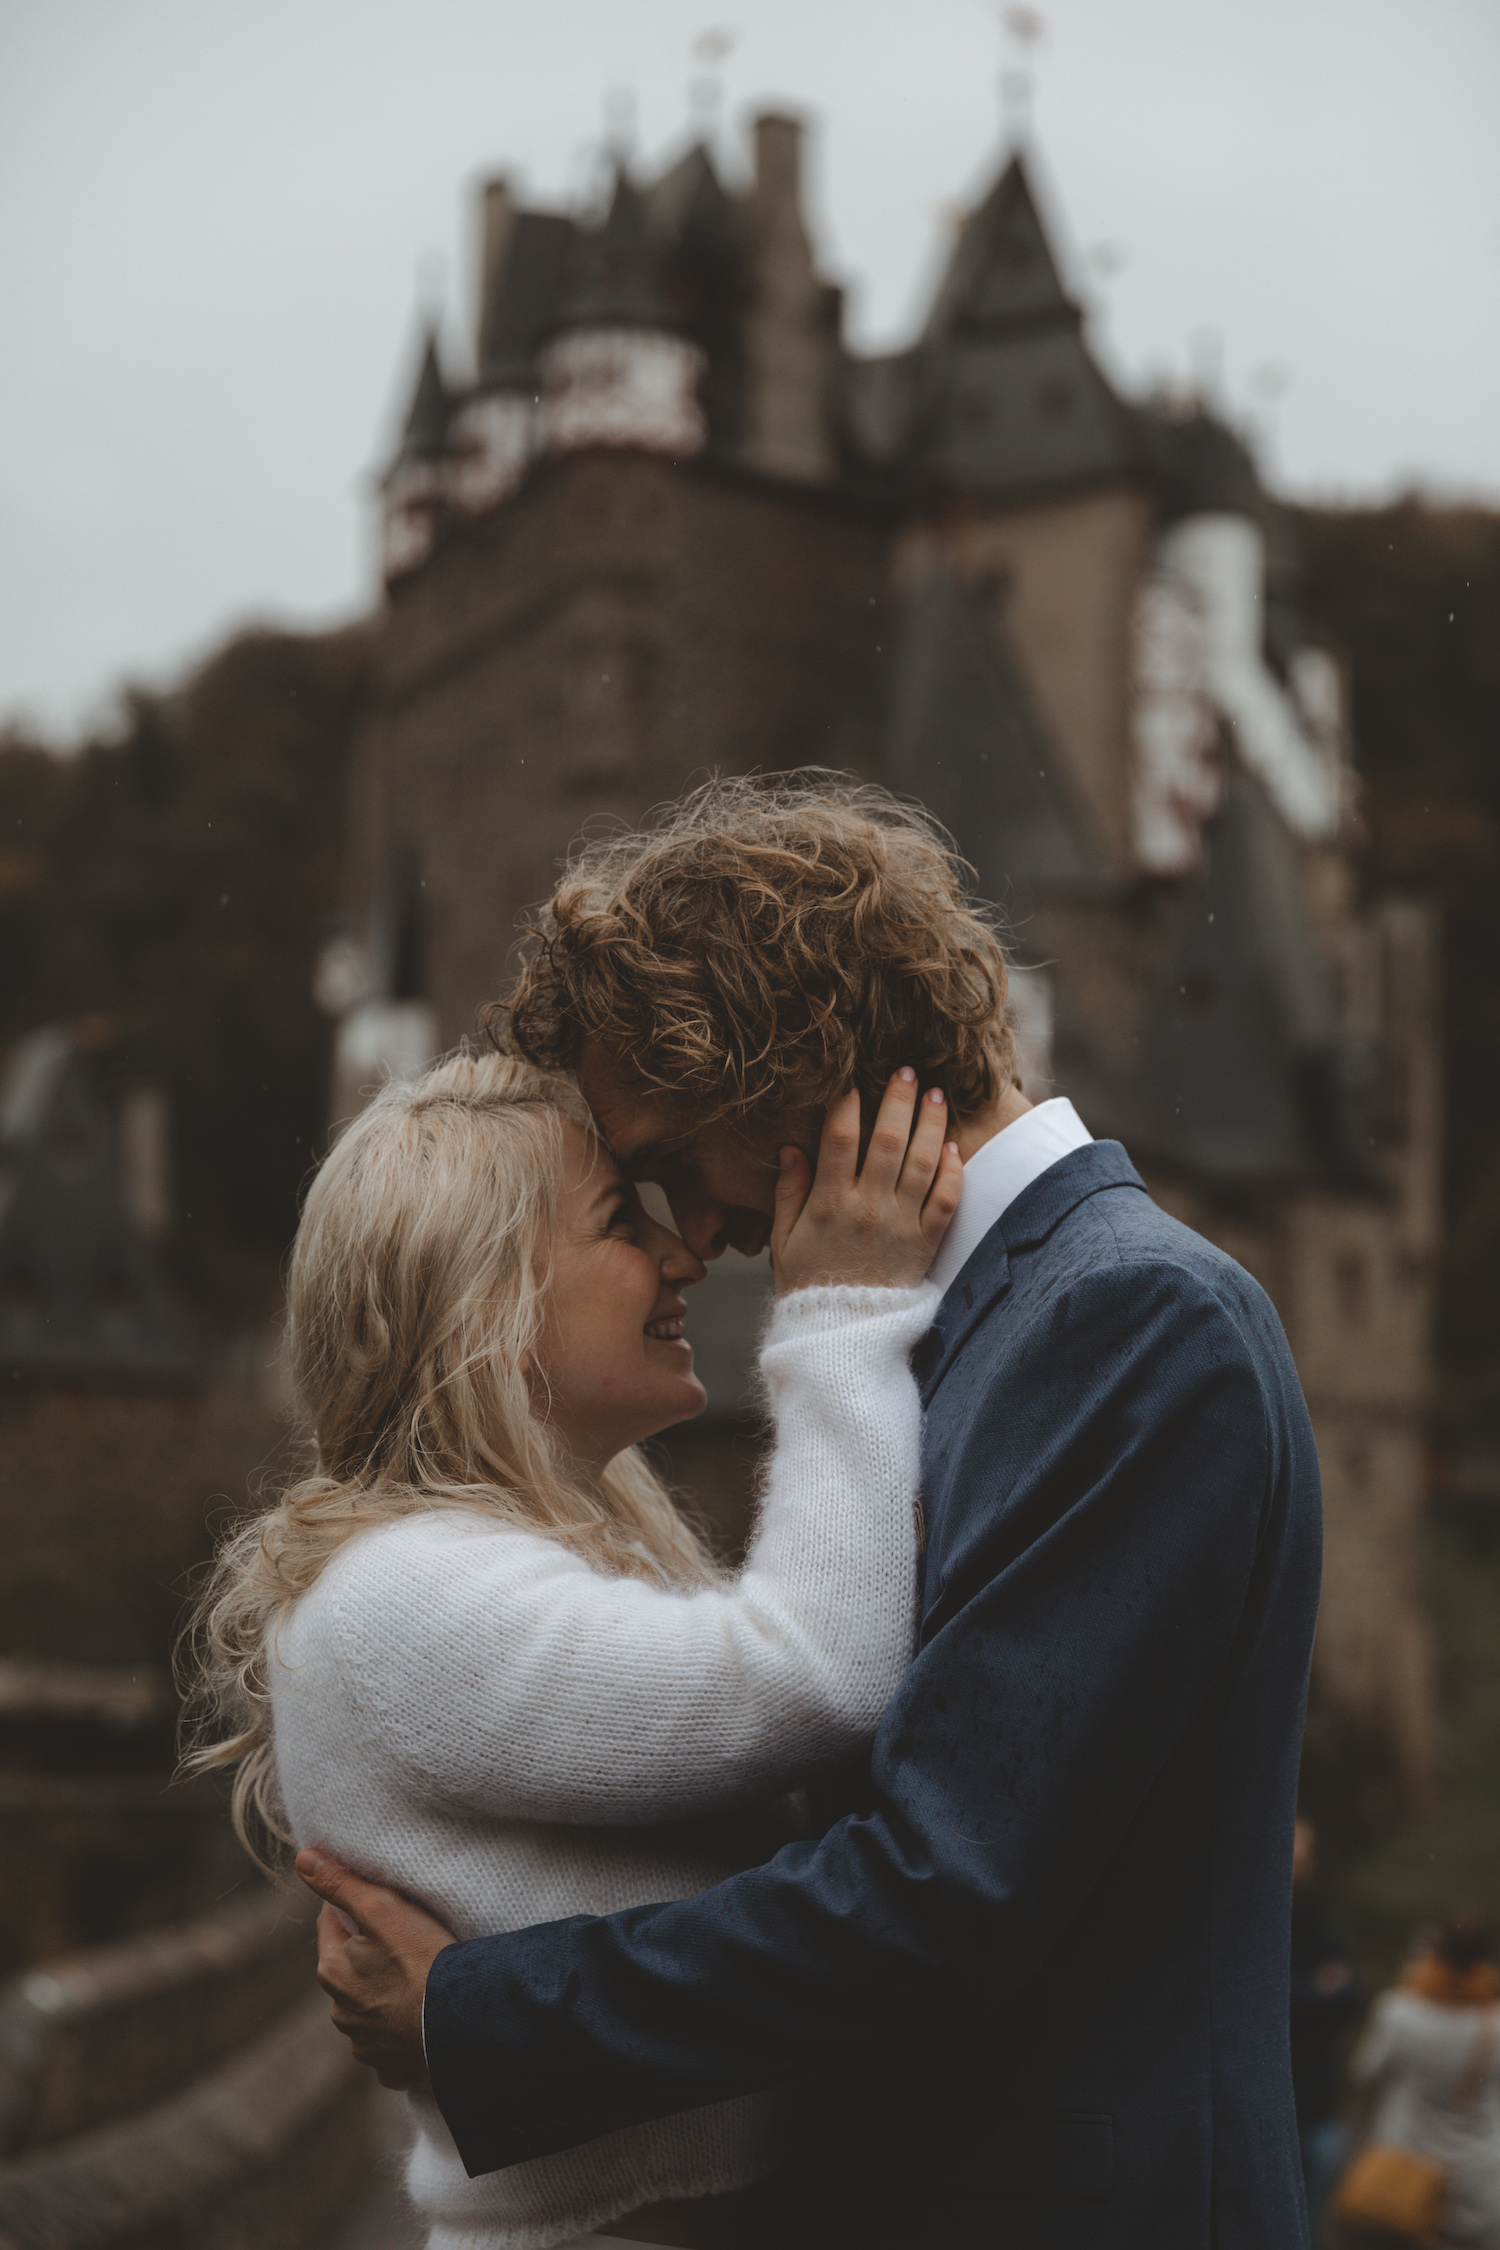 noni Brautmode Herbsthochzeit auf Burg Eltz von Influencerin beautelicieuse, Brautkleid mit Pullover, Spitzentop und Tüllrock